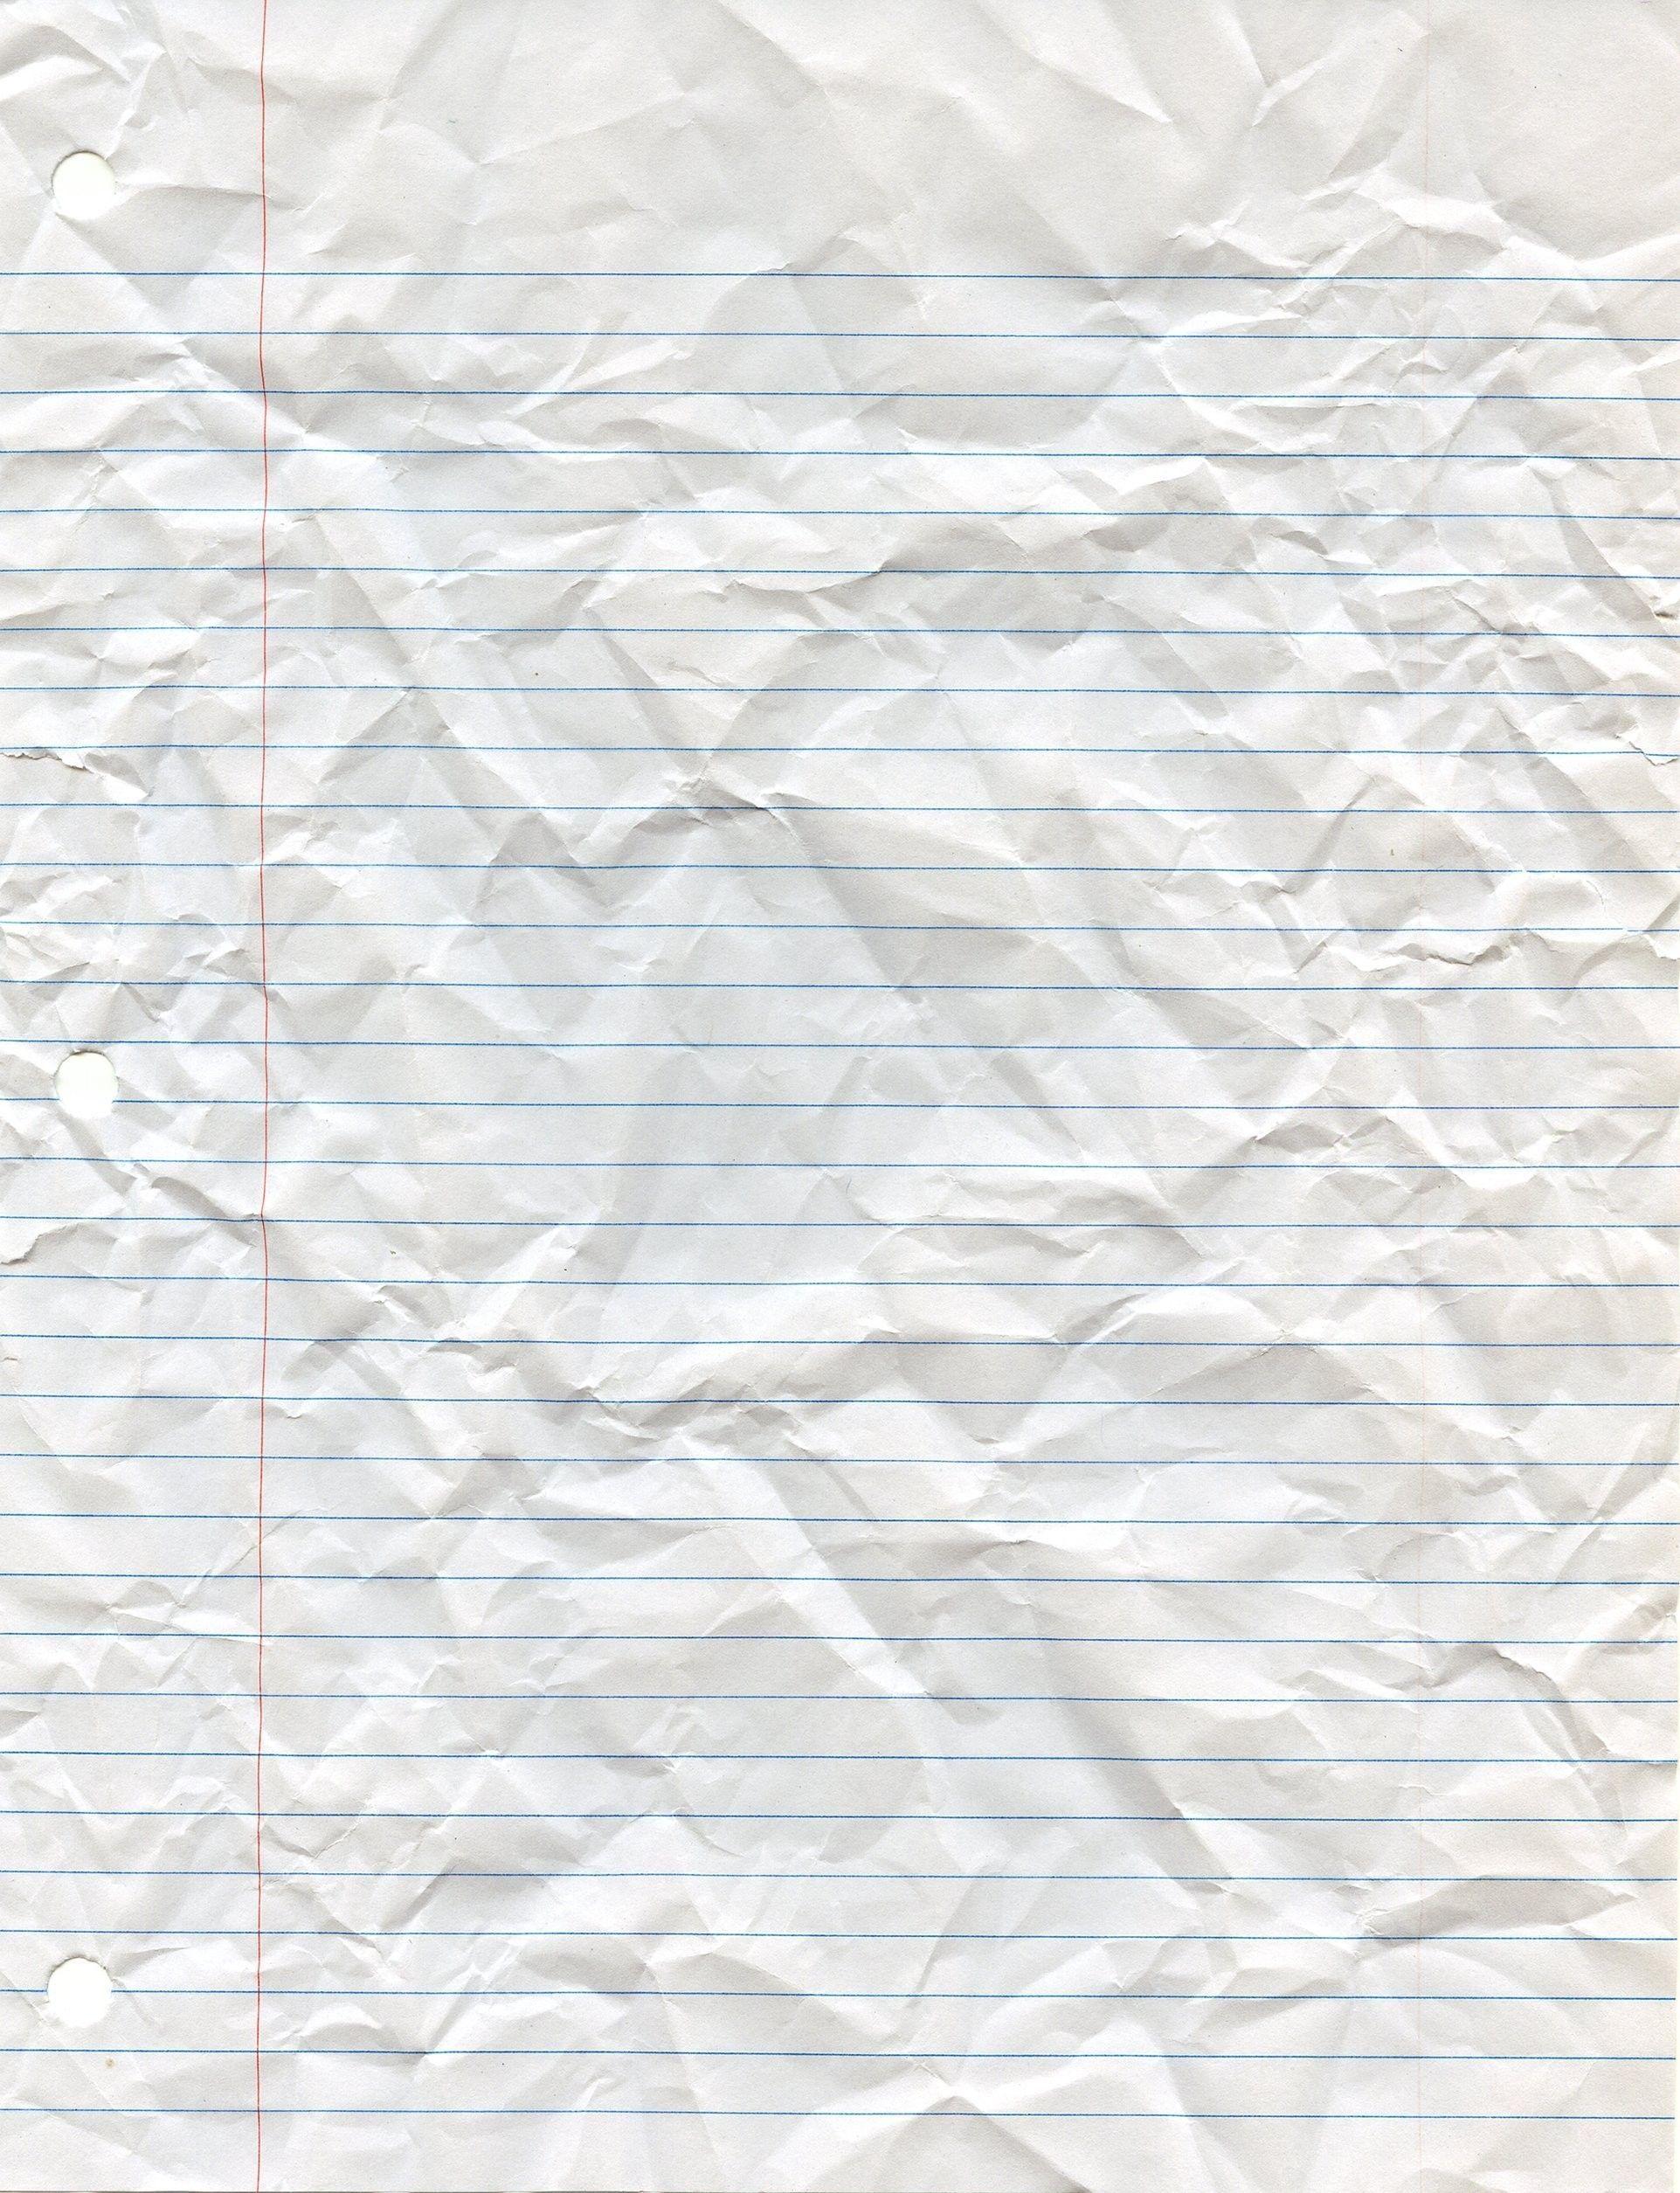 Notebook Paper Wallpapers - Top Những Hình Ảnh Đẹp